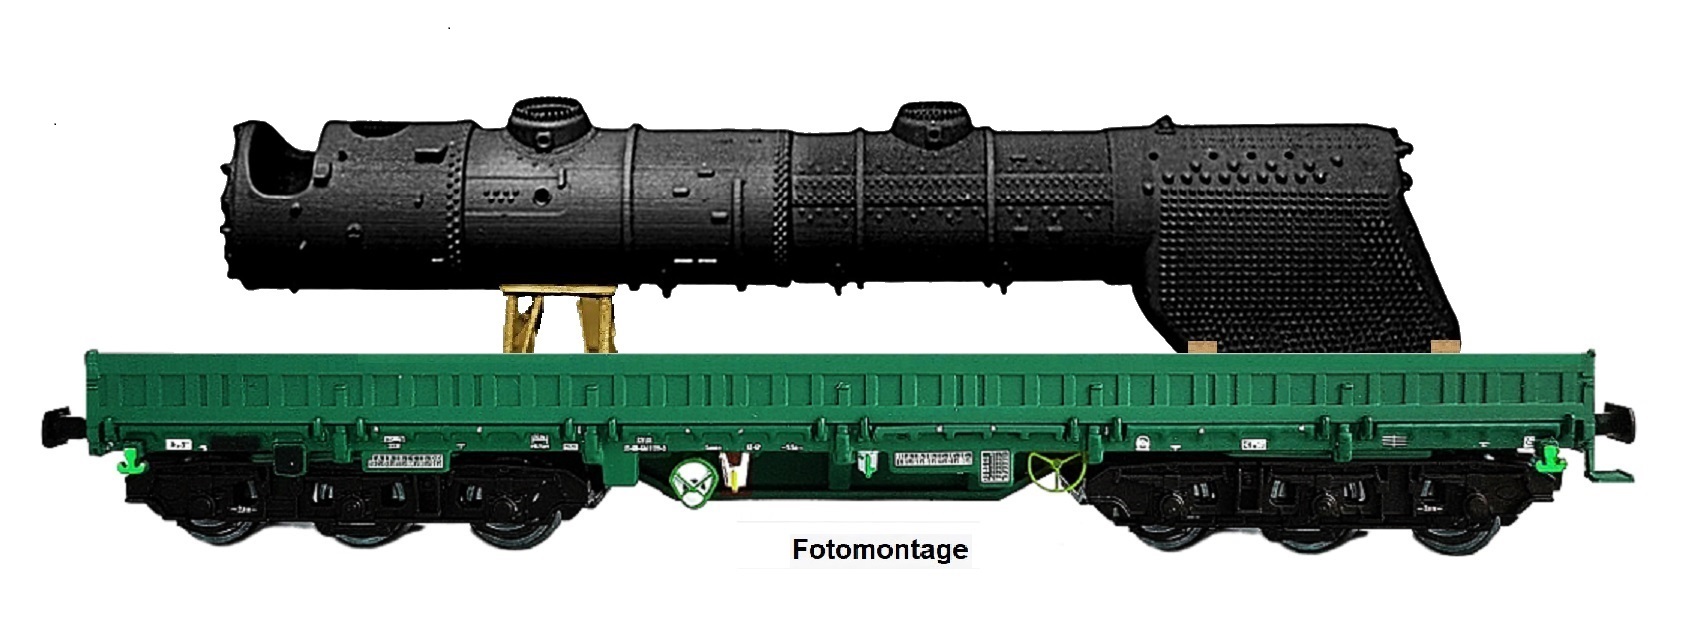 NPE Modellbau NW22942 - H0 - Schwerlastwagen Samms als Bahndienstwagen 'RAW Meinigen' mit Reko-Kessel, DB, Ep. IV - Exklusivmodell